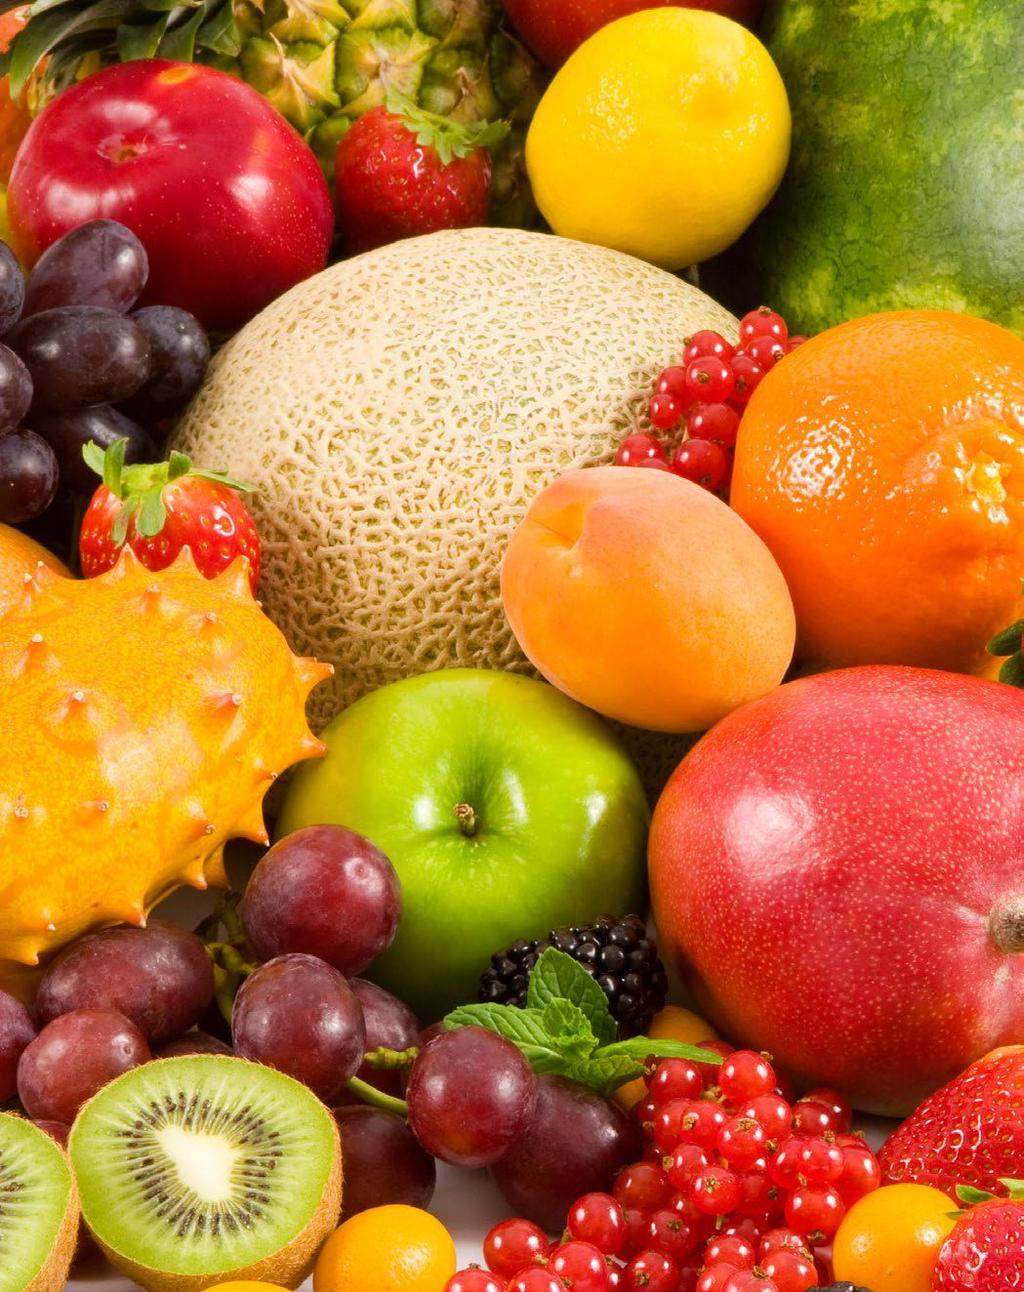 Kan vi frit md Gjldr ogå økologik pri-30% Et tort utvalg frukt & bær Gjldr ikk tørkt frukt og nøttr, hrmtirt og fryt bær.